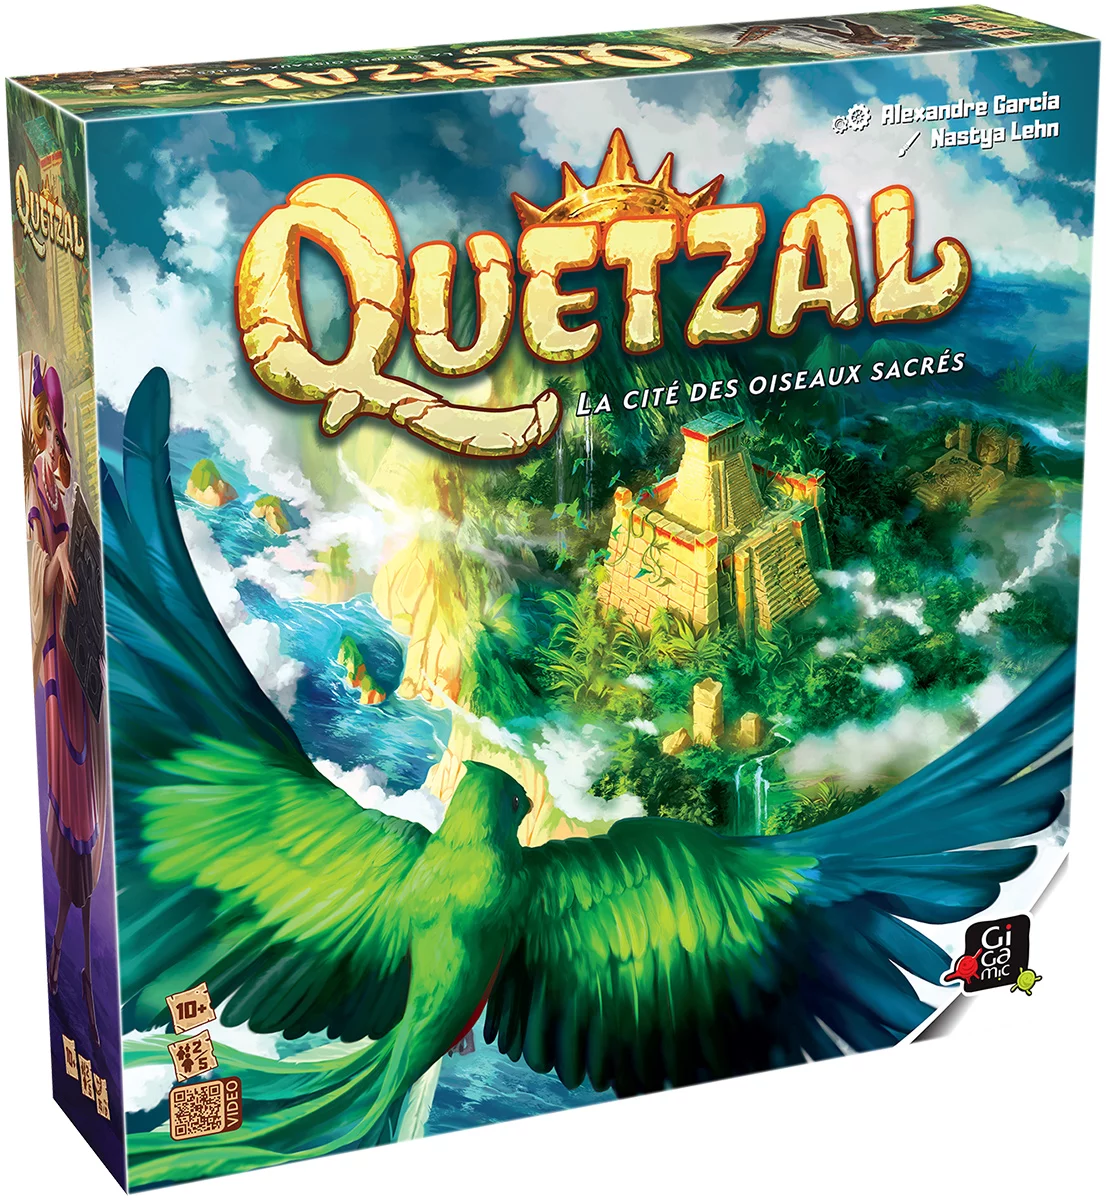  Quetzal au flip 2021 - jeu de société Gigamic